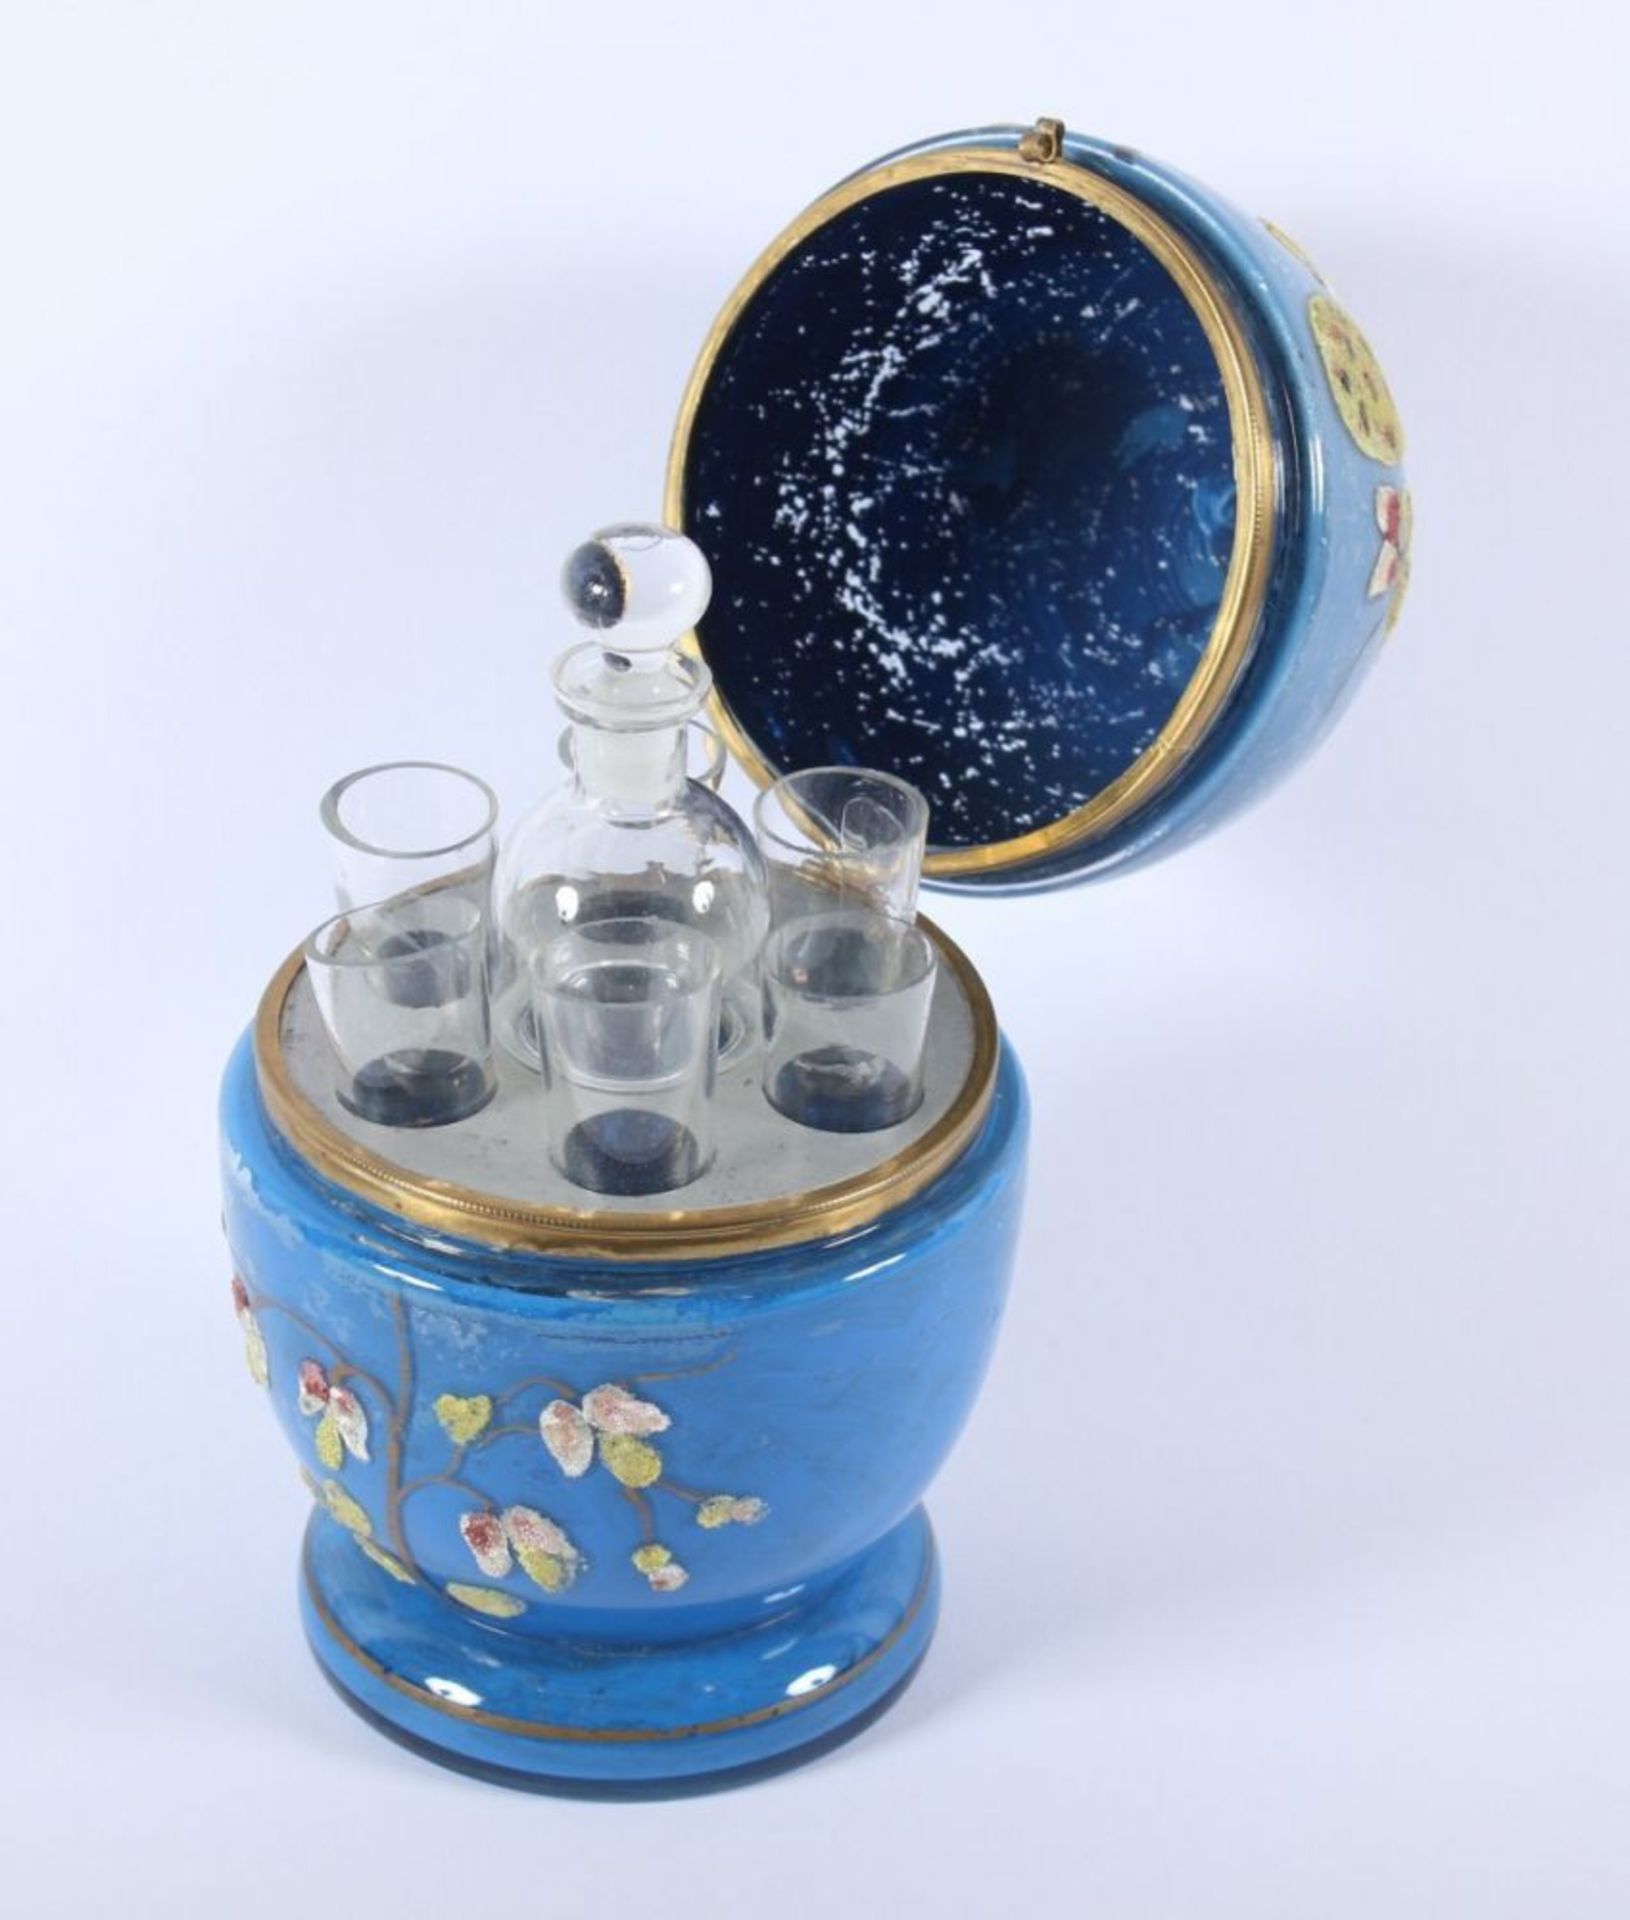 GLASEI MIT LIKÖRSET, farbloses Glas, innen blau überfangen (ber.), polychromer Pfauendekor, - Image 2 of 2